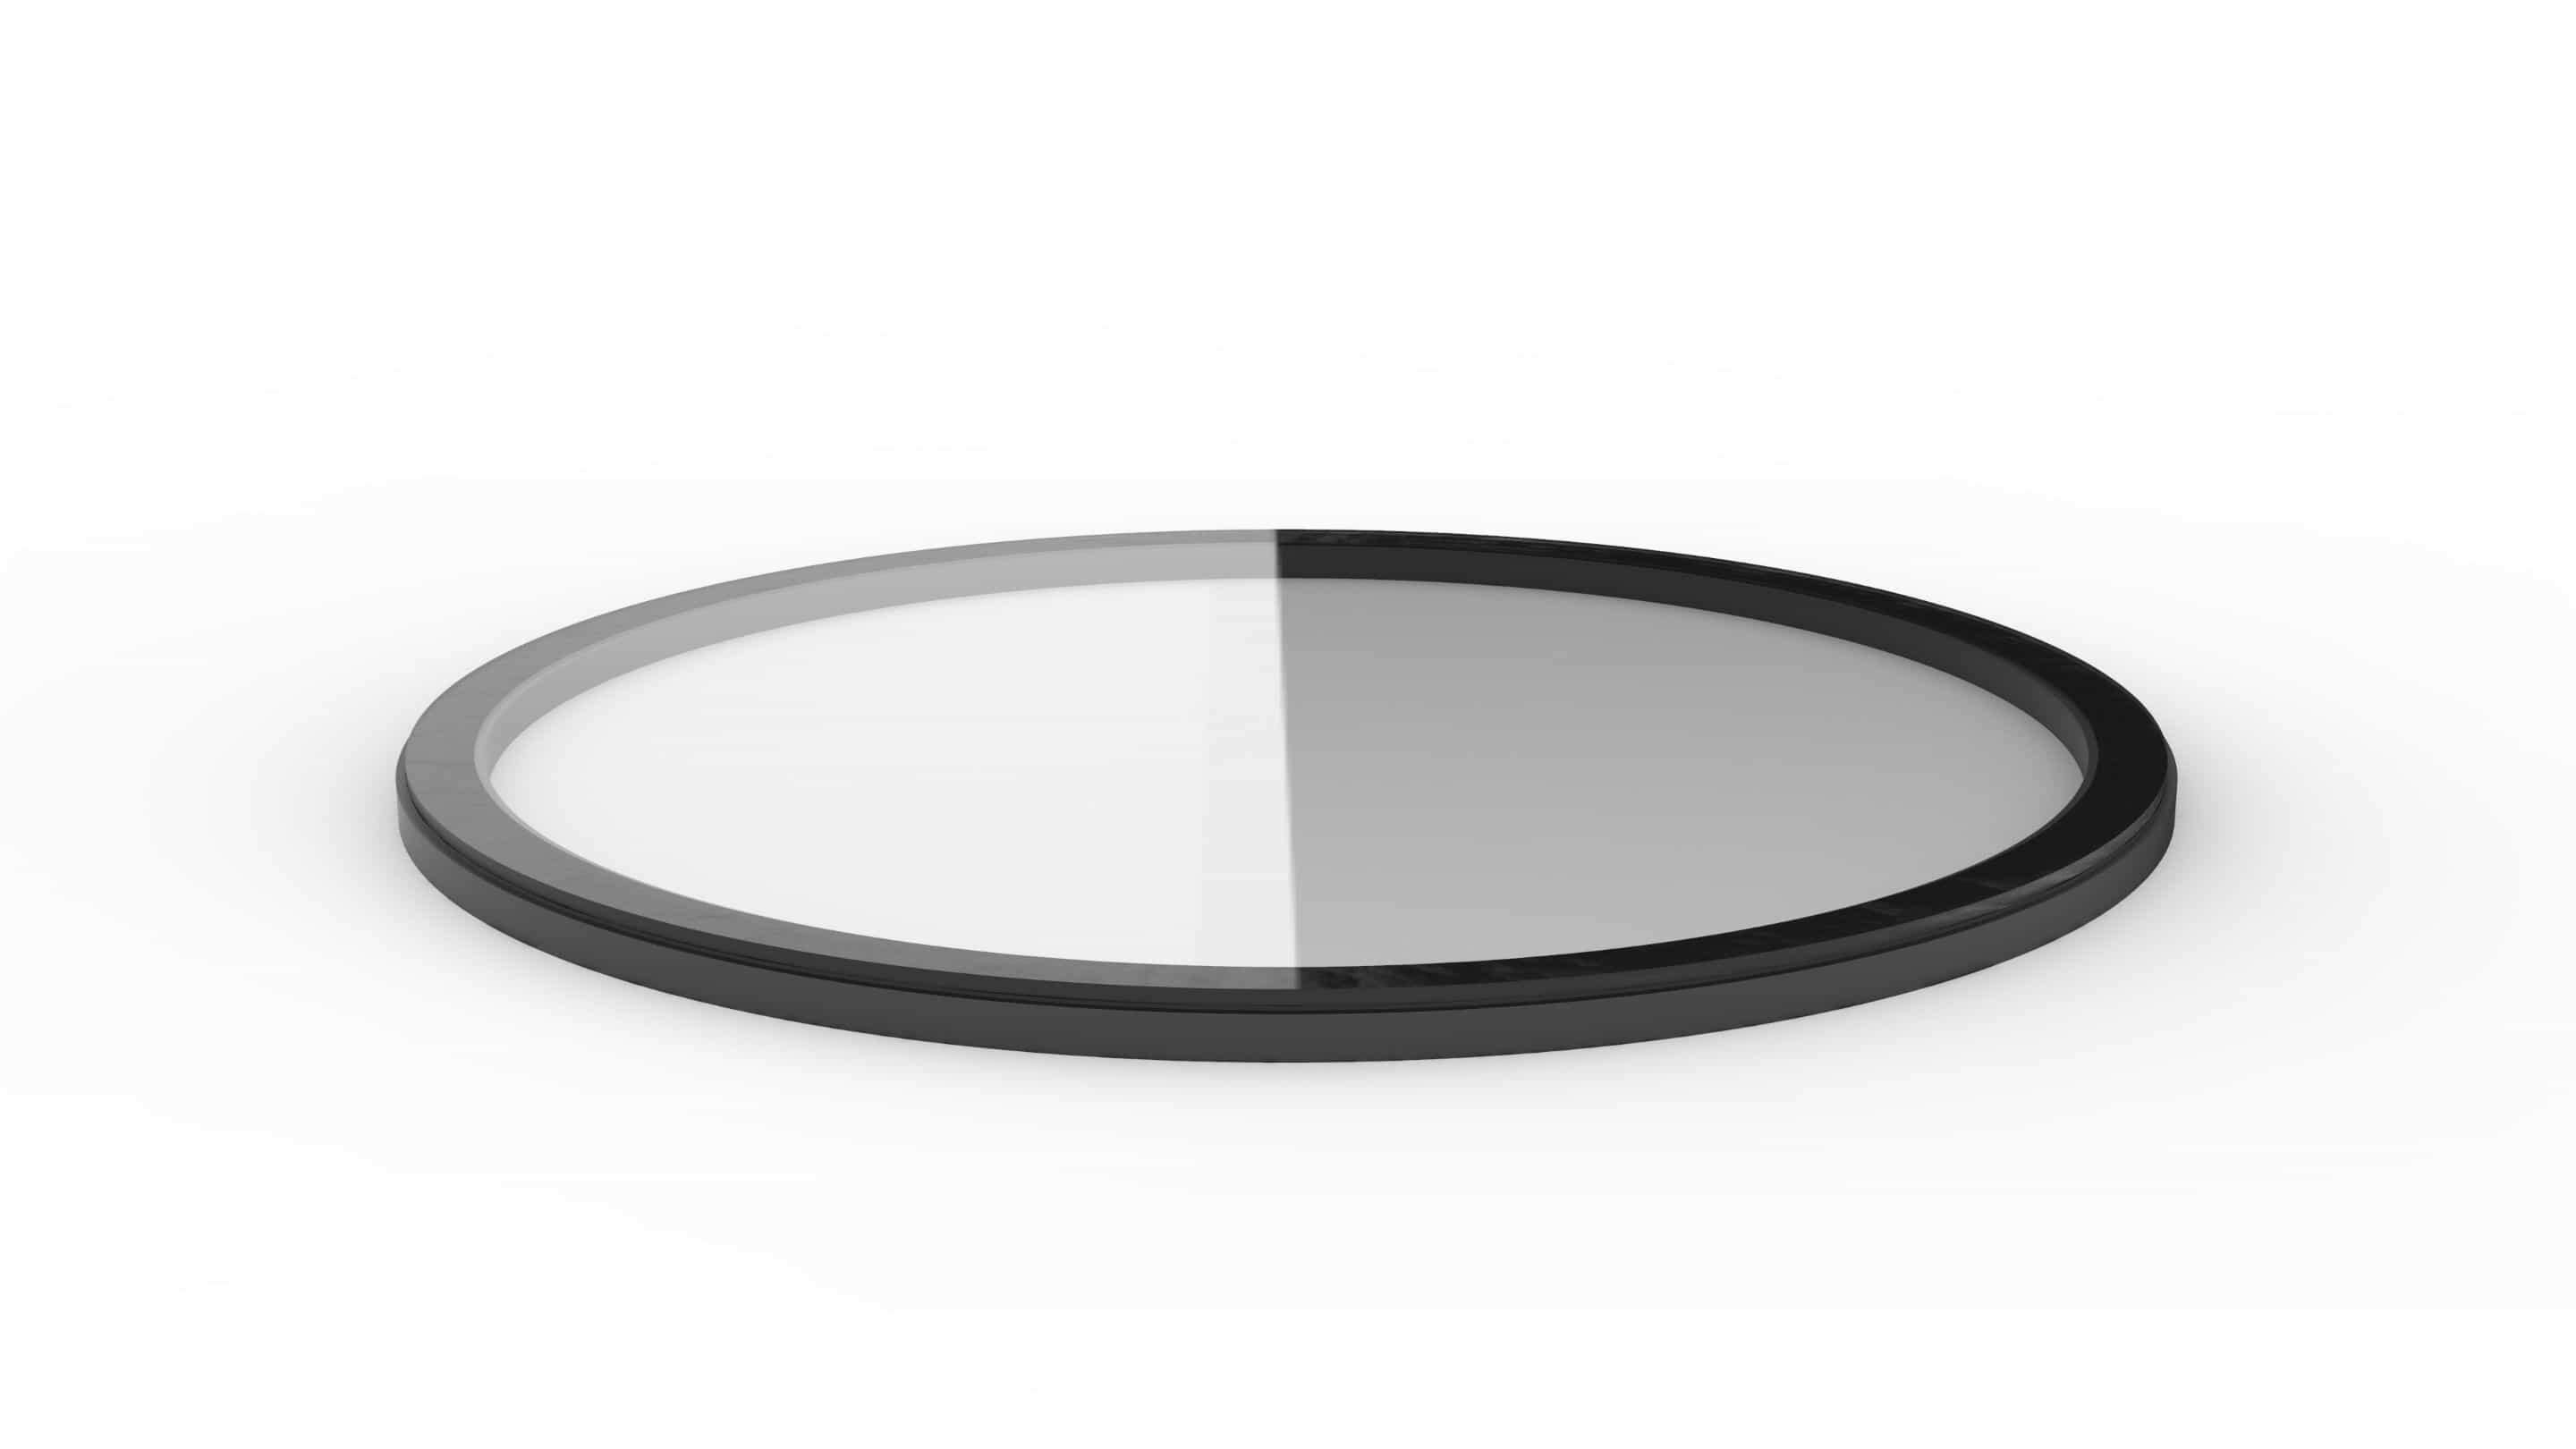 Impactinator® Verre - Verre collé sur anneau en aluminium un objet circulaire noir et blanc